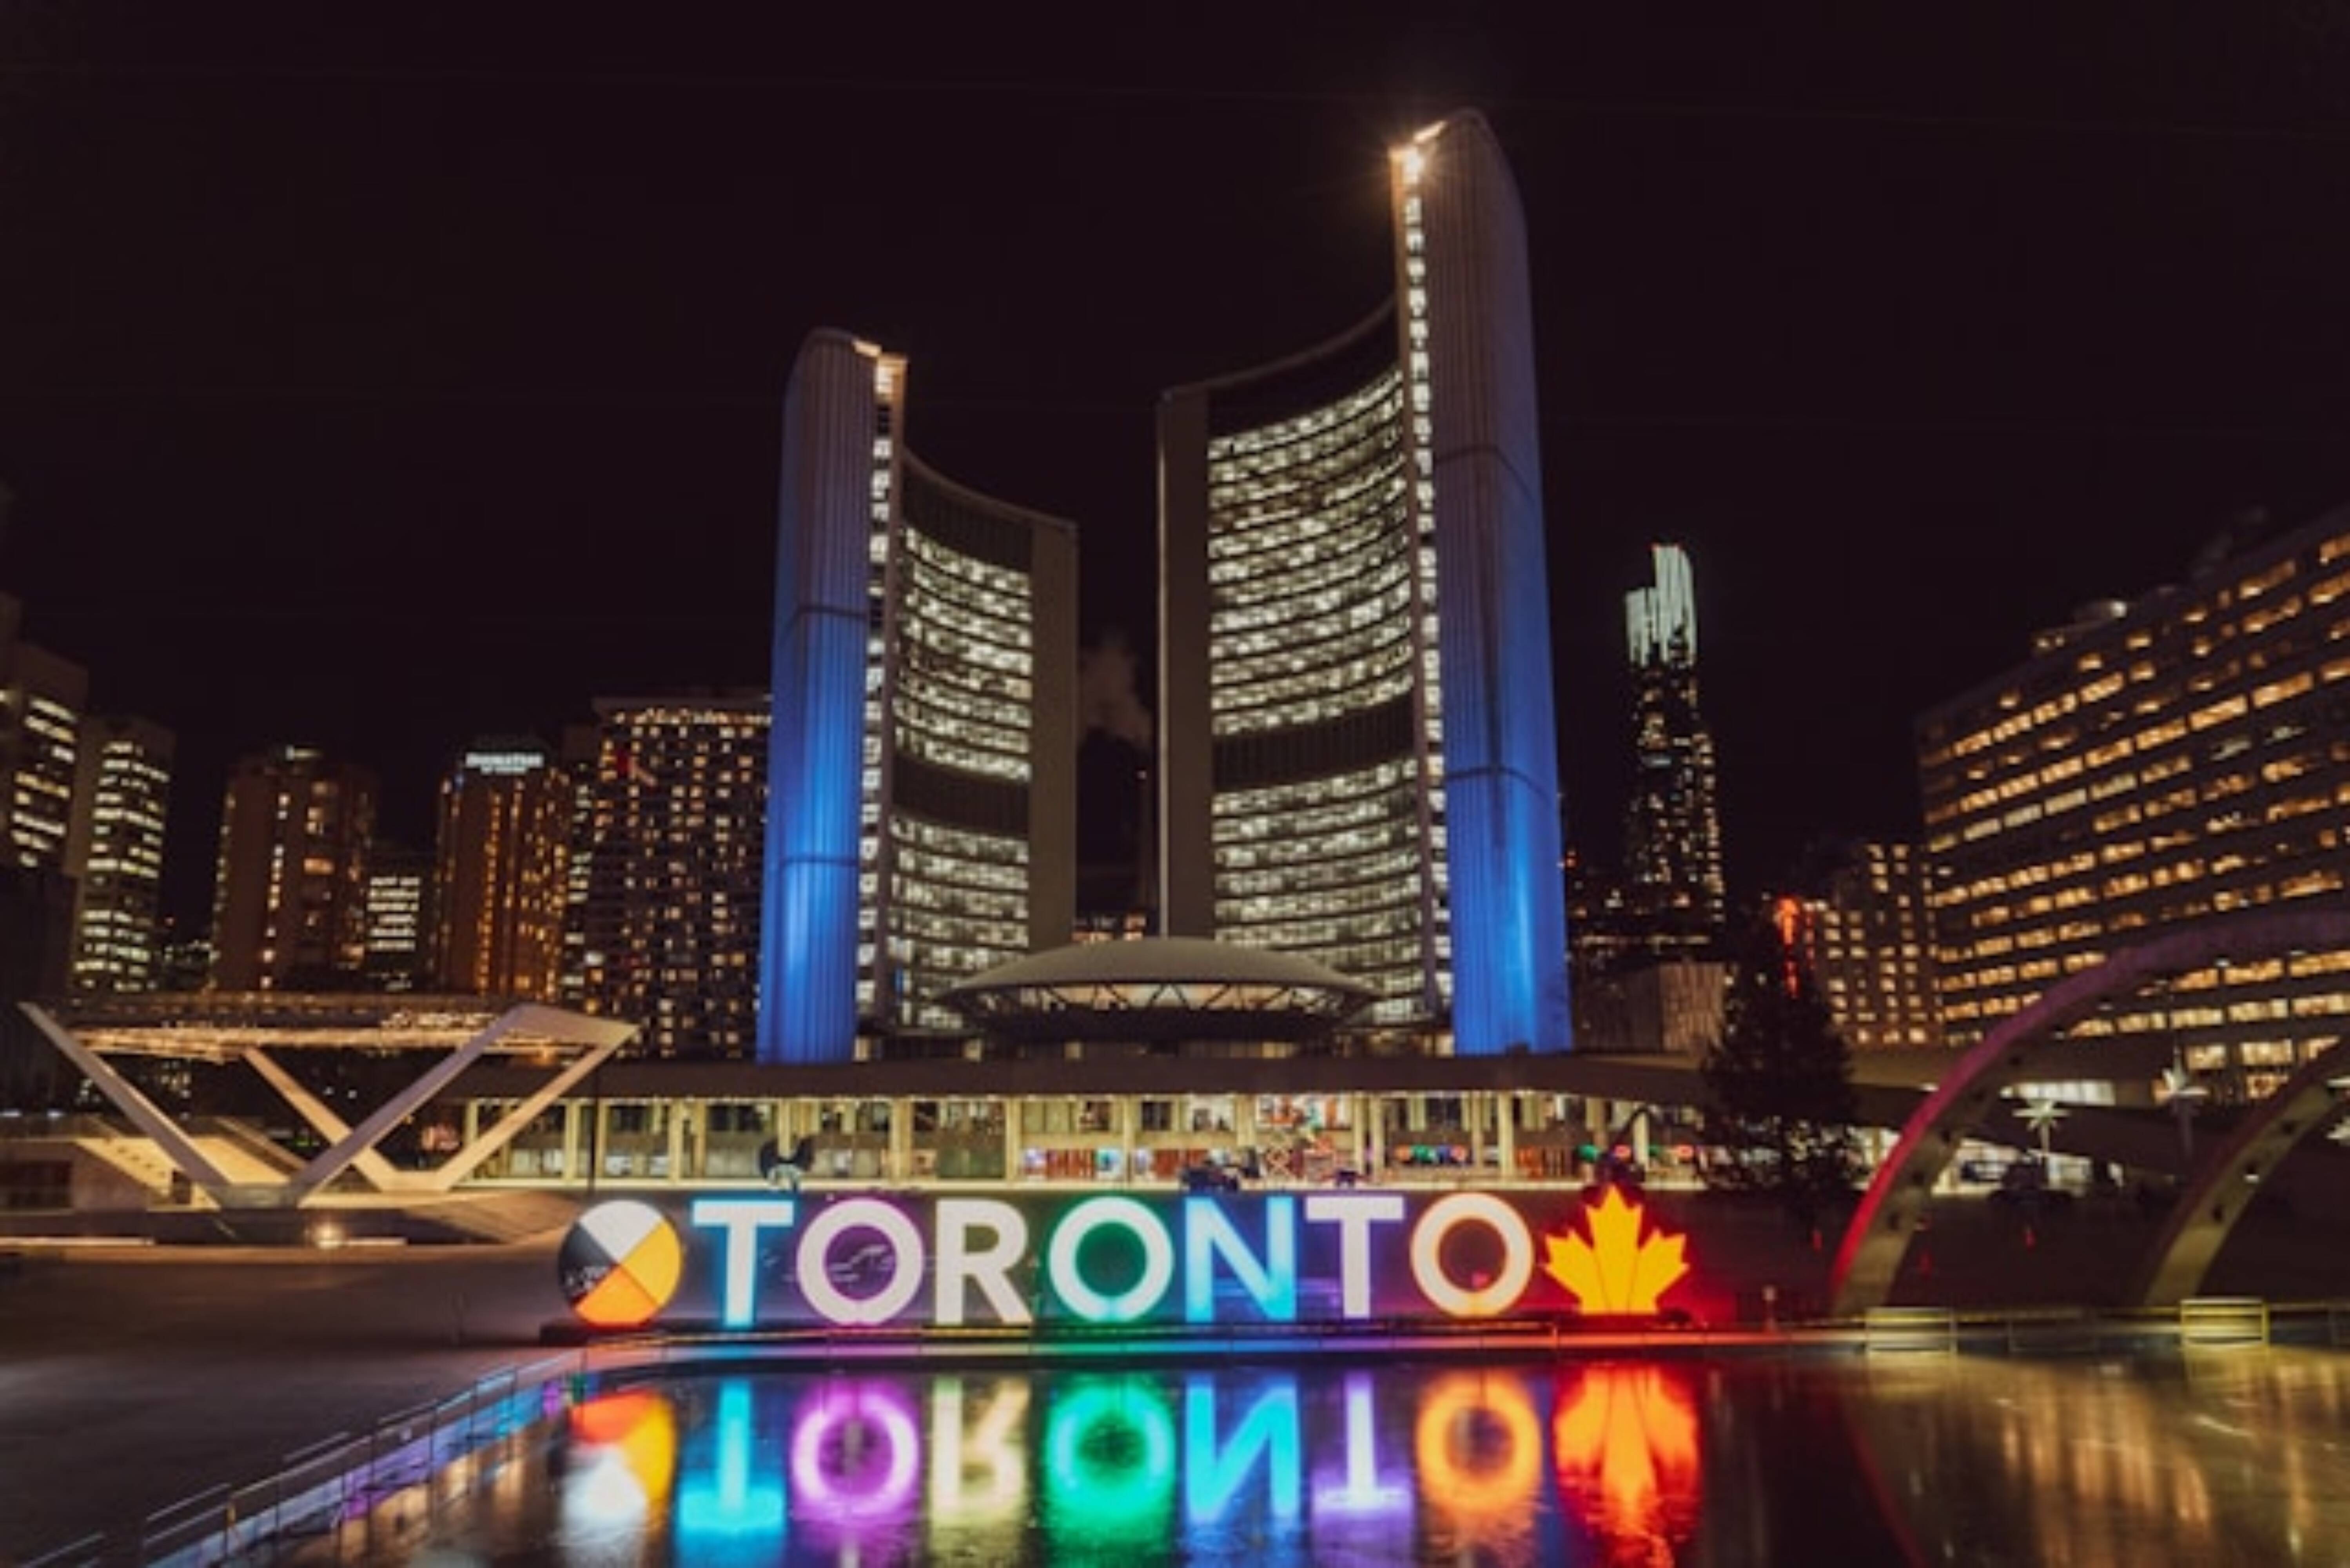 Toronto skyline during the night